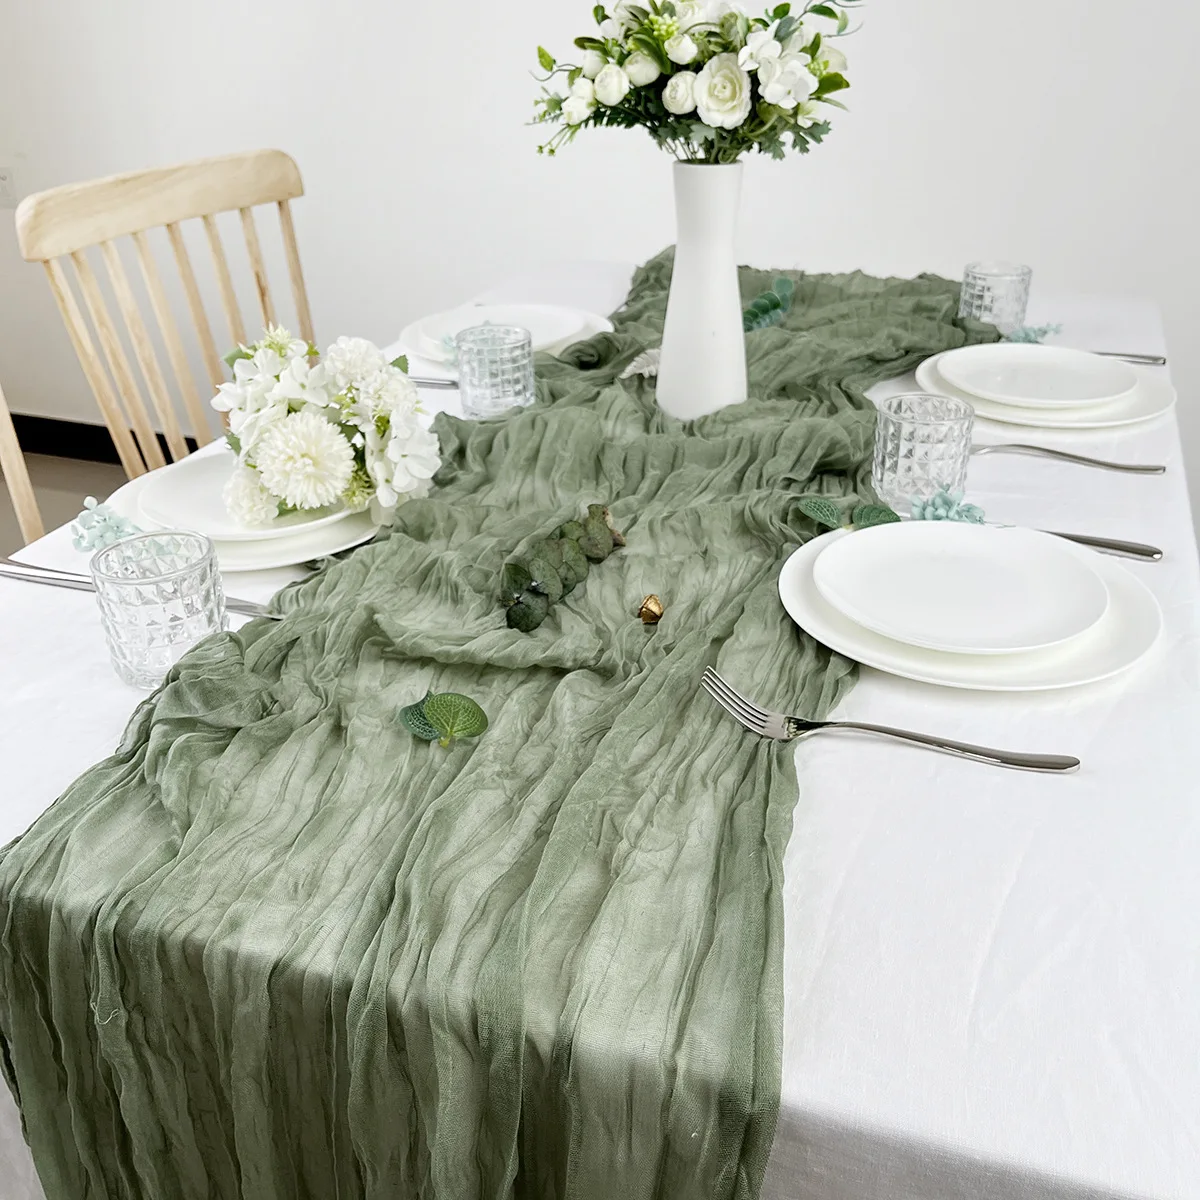 

Шифоновая скатерть, полупрозрачная марлевая скатерть, скатерть для сервировки стола, винтажное свадебное украшение, декор в стиле бохо